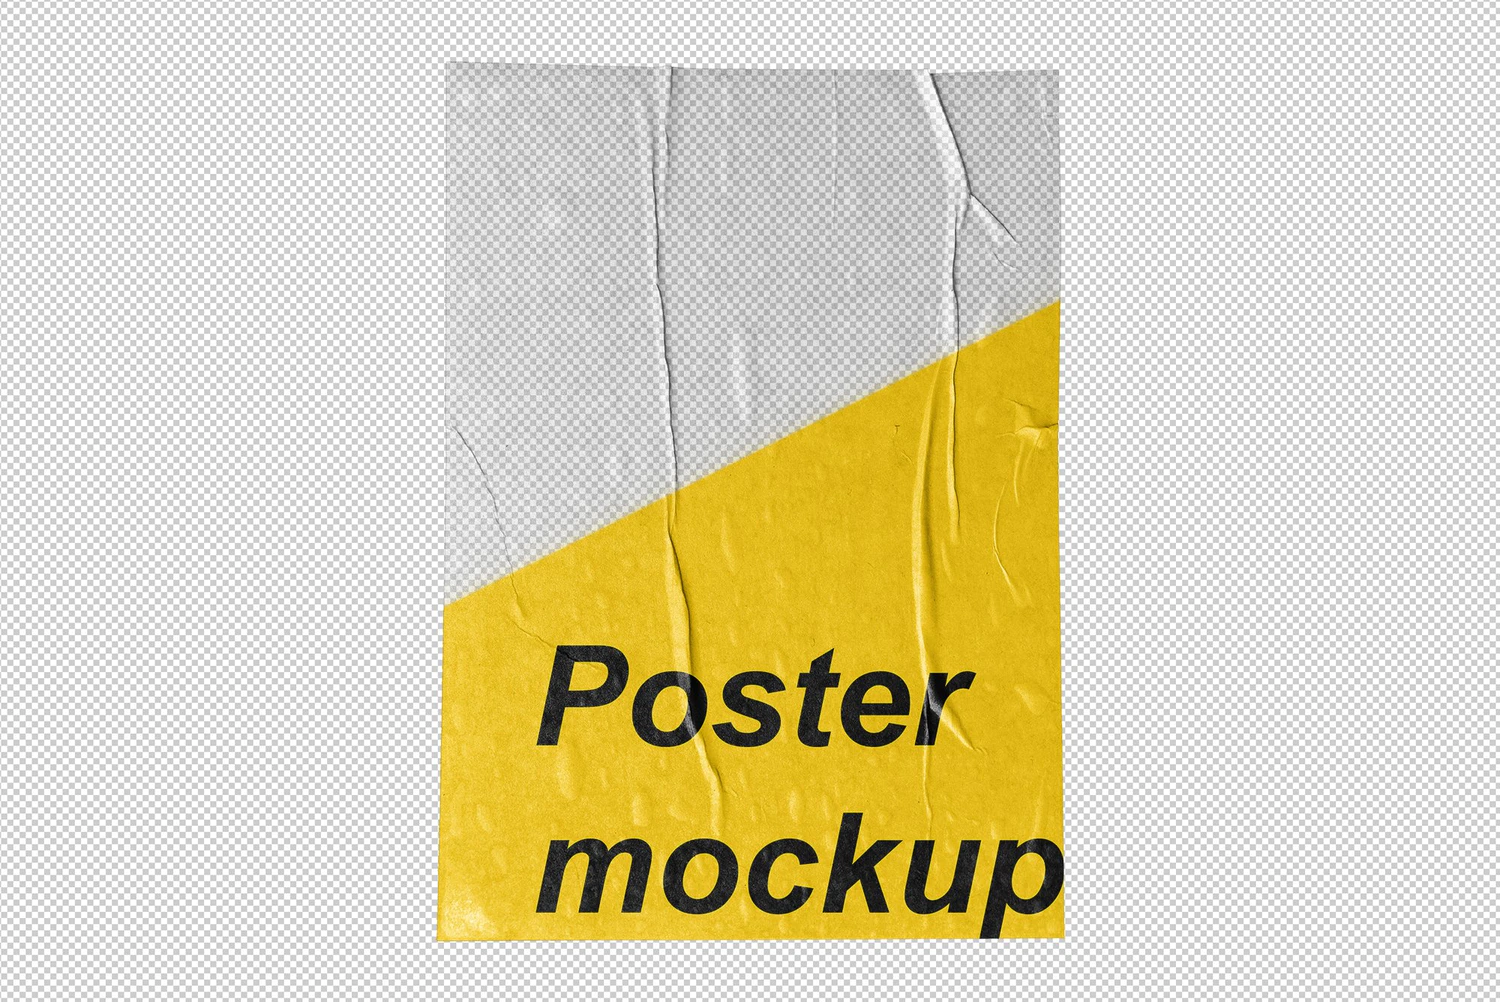 2643 褶皱旧纸墙面海报设计贴图展示样机PSD模板 POST – Poster Wrinkle Mockup